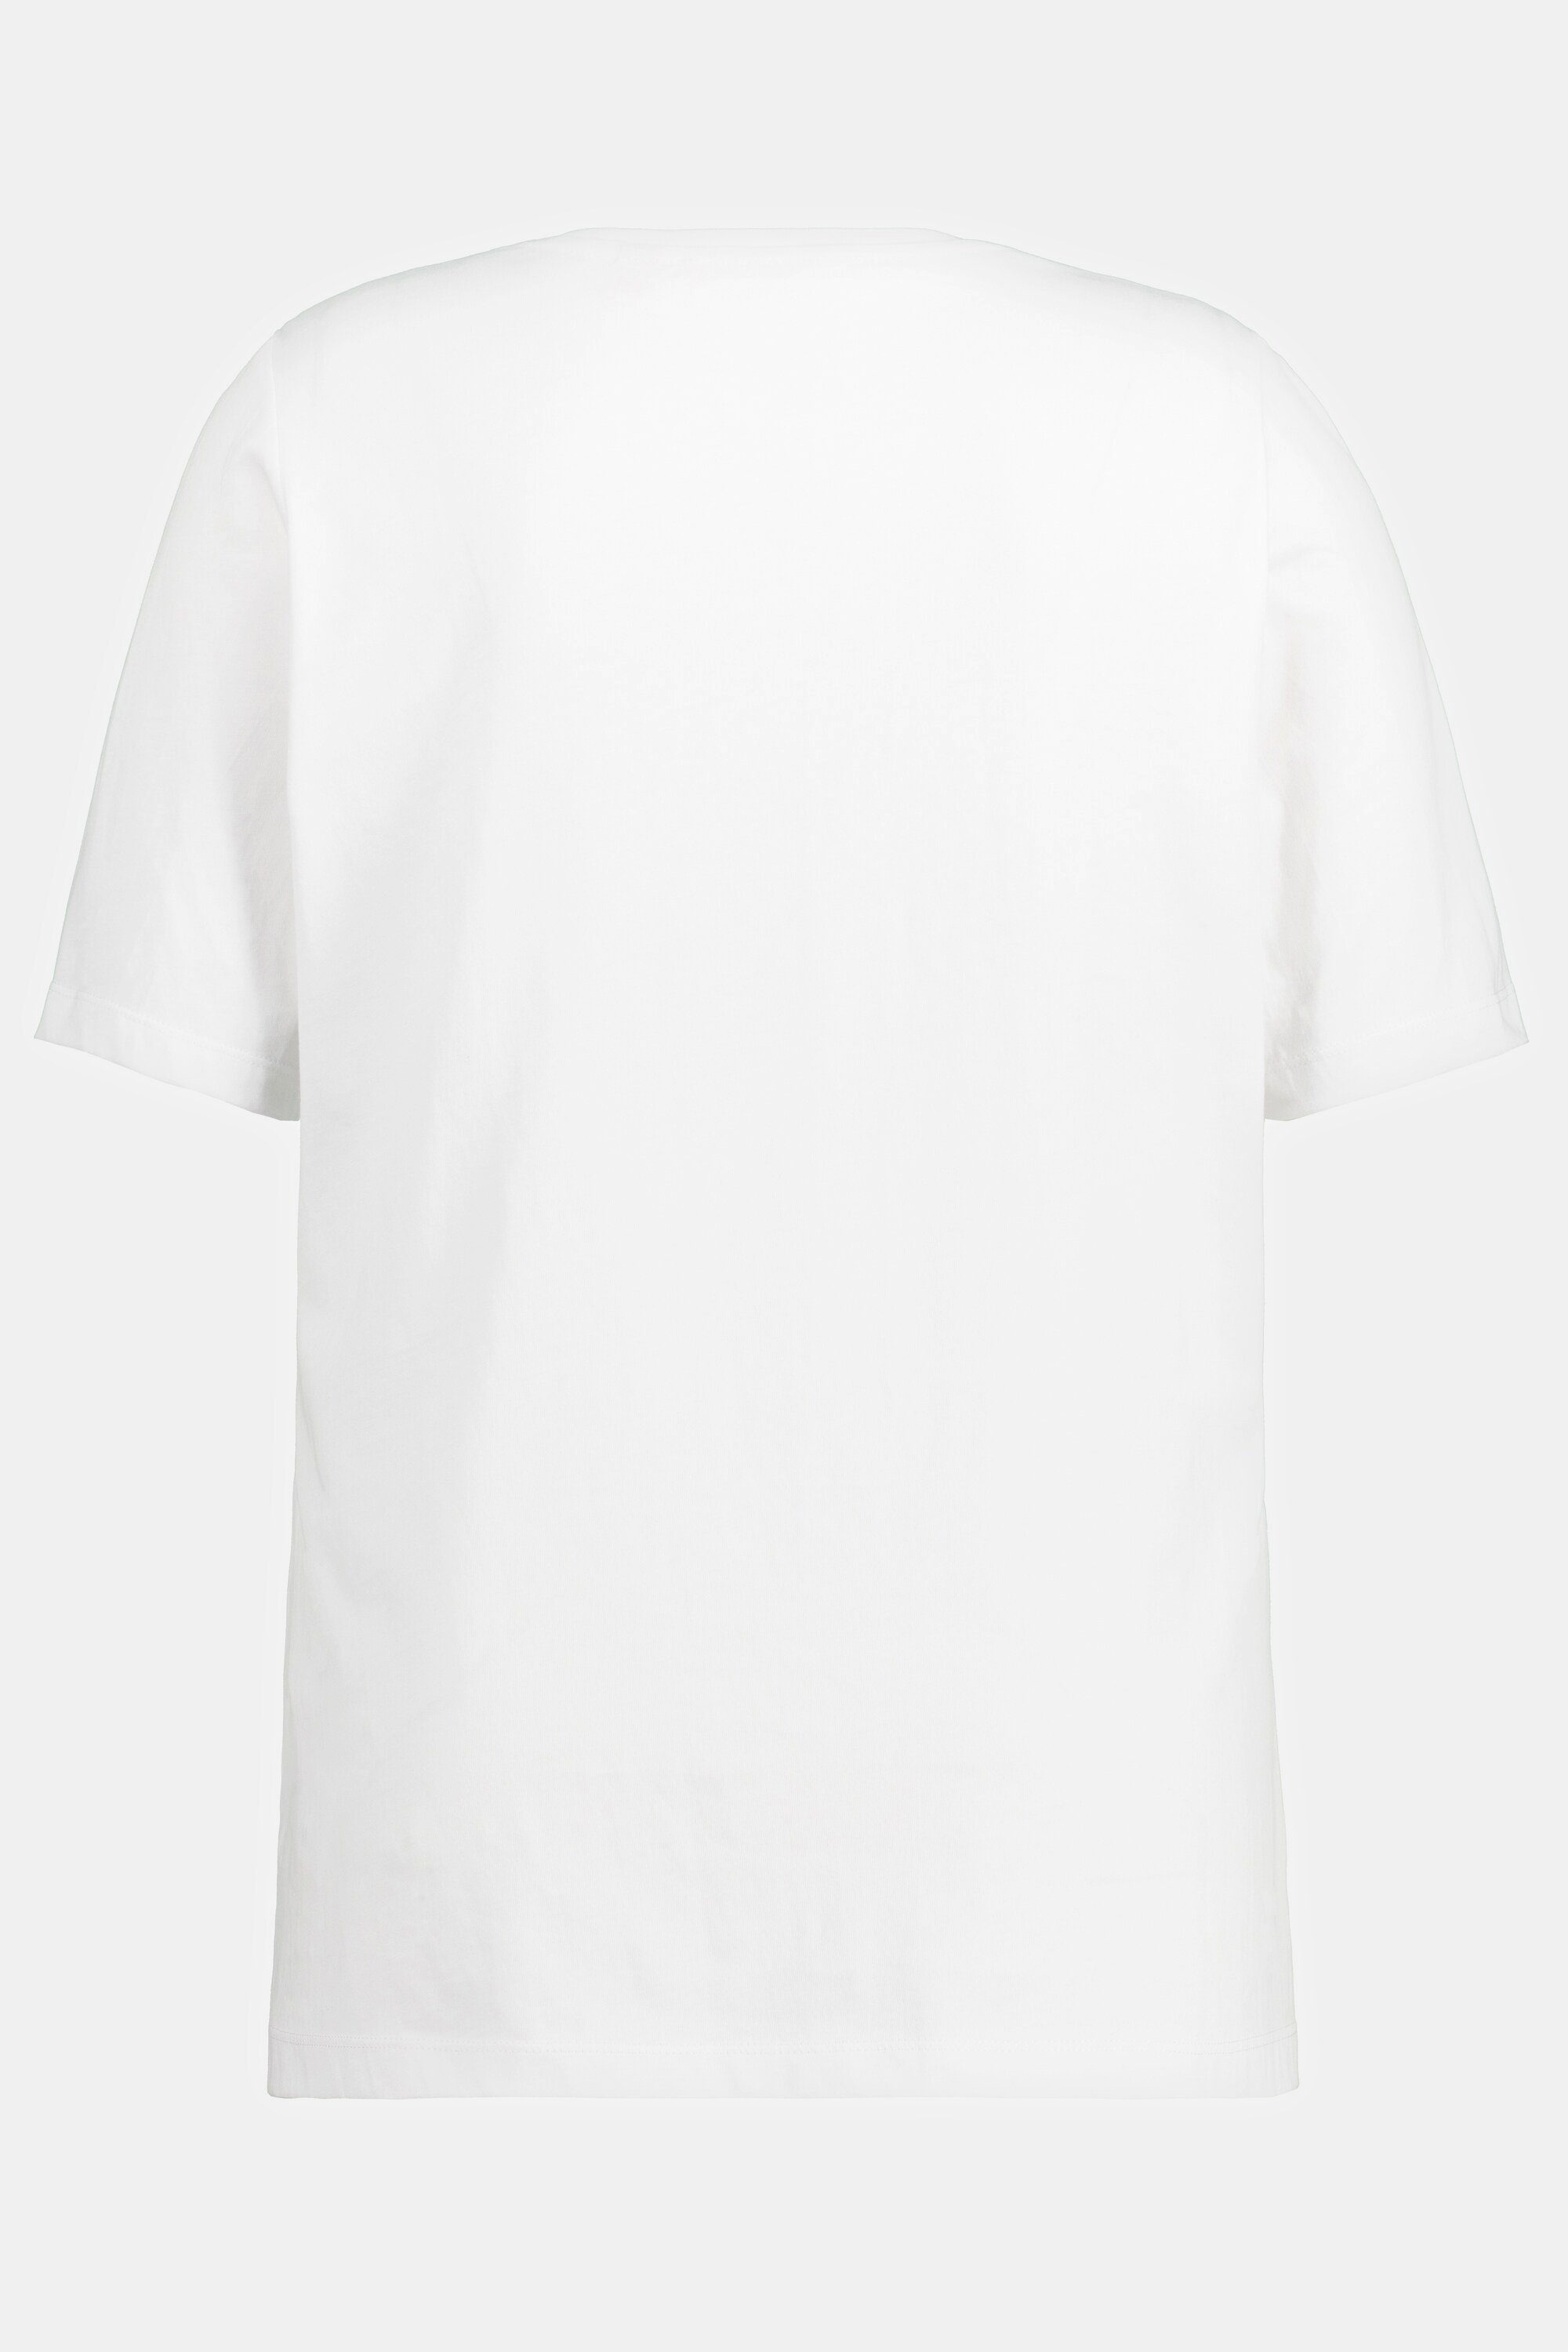 Ulla Popken Rundhals Biobaumwolle offwhite bedruckt Halbarm Rundhalsshirt T-Shirt